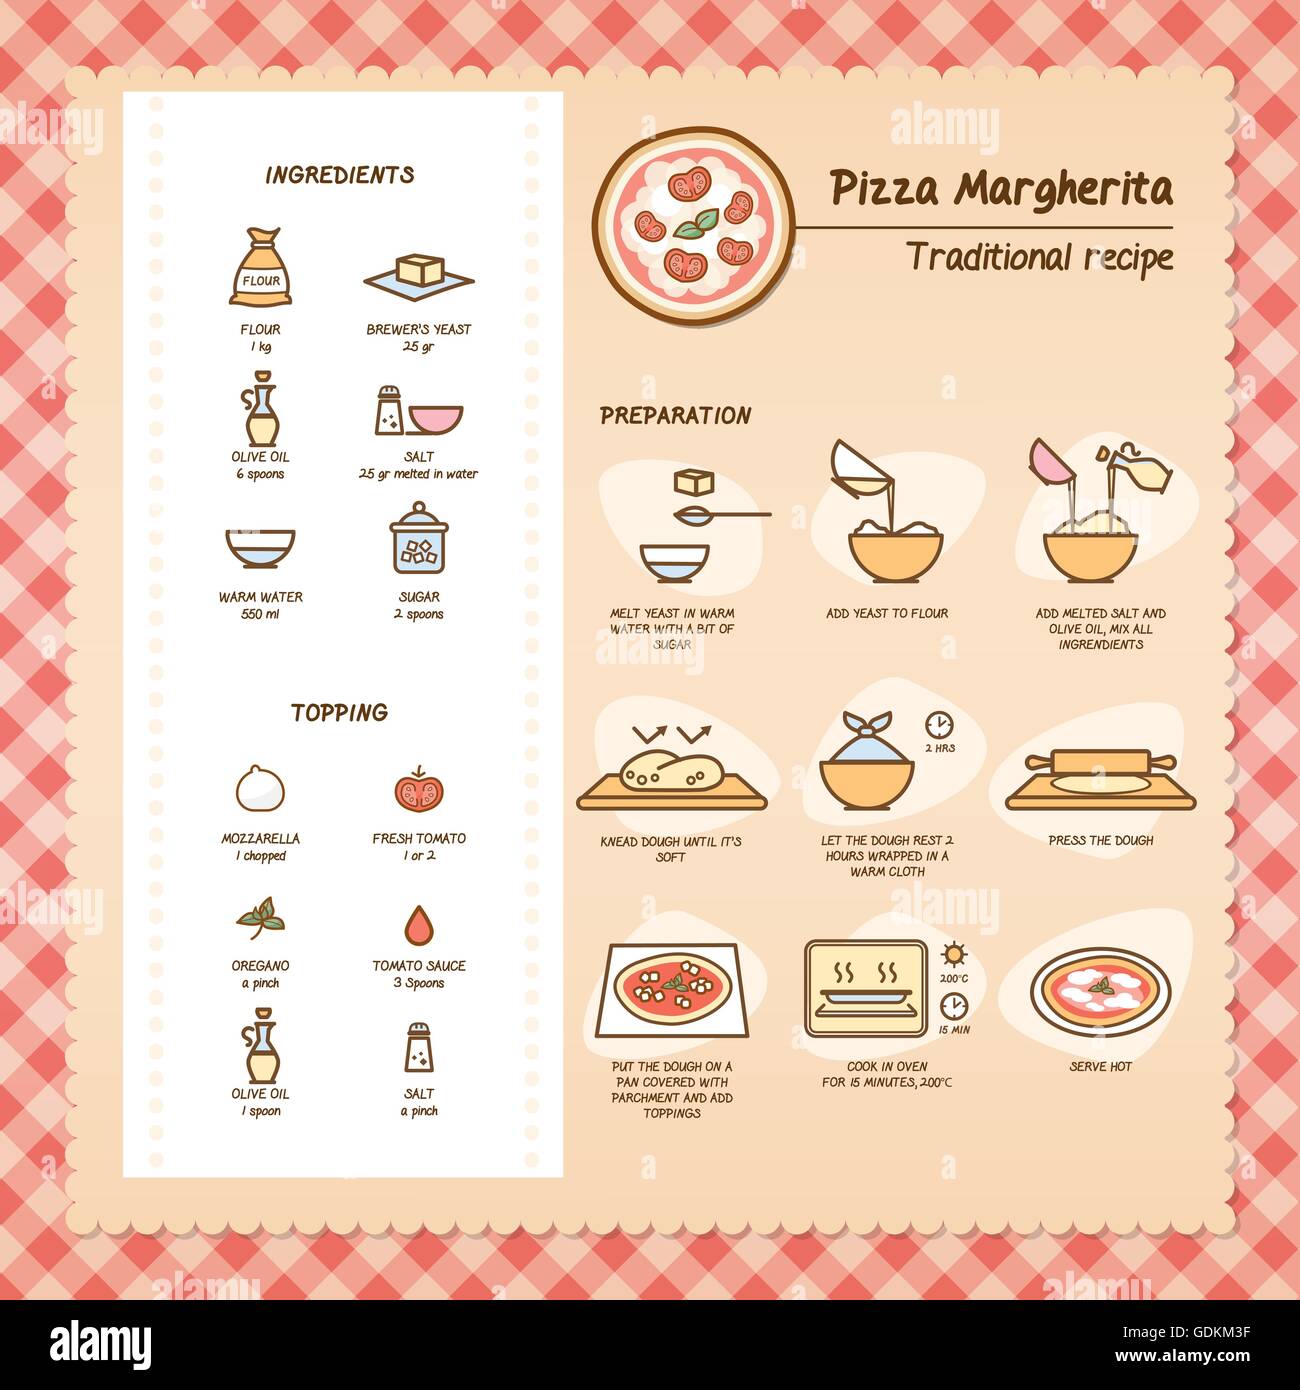 Pizza Margherita traditionellen Rezept mit Zutaten und Zubereitung Stock Vektor